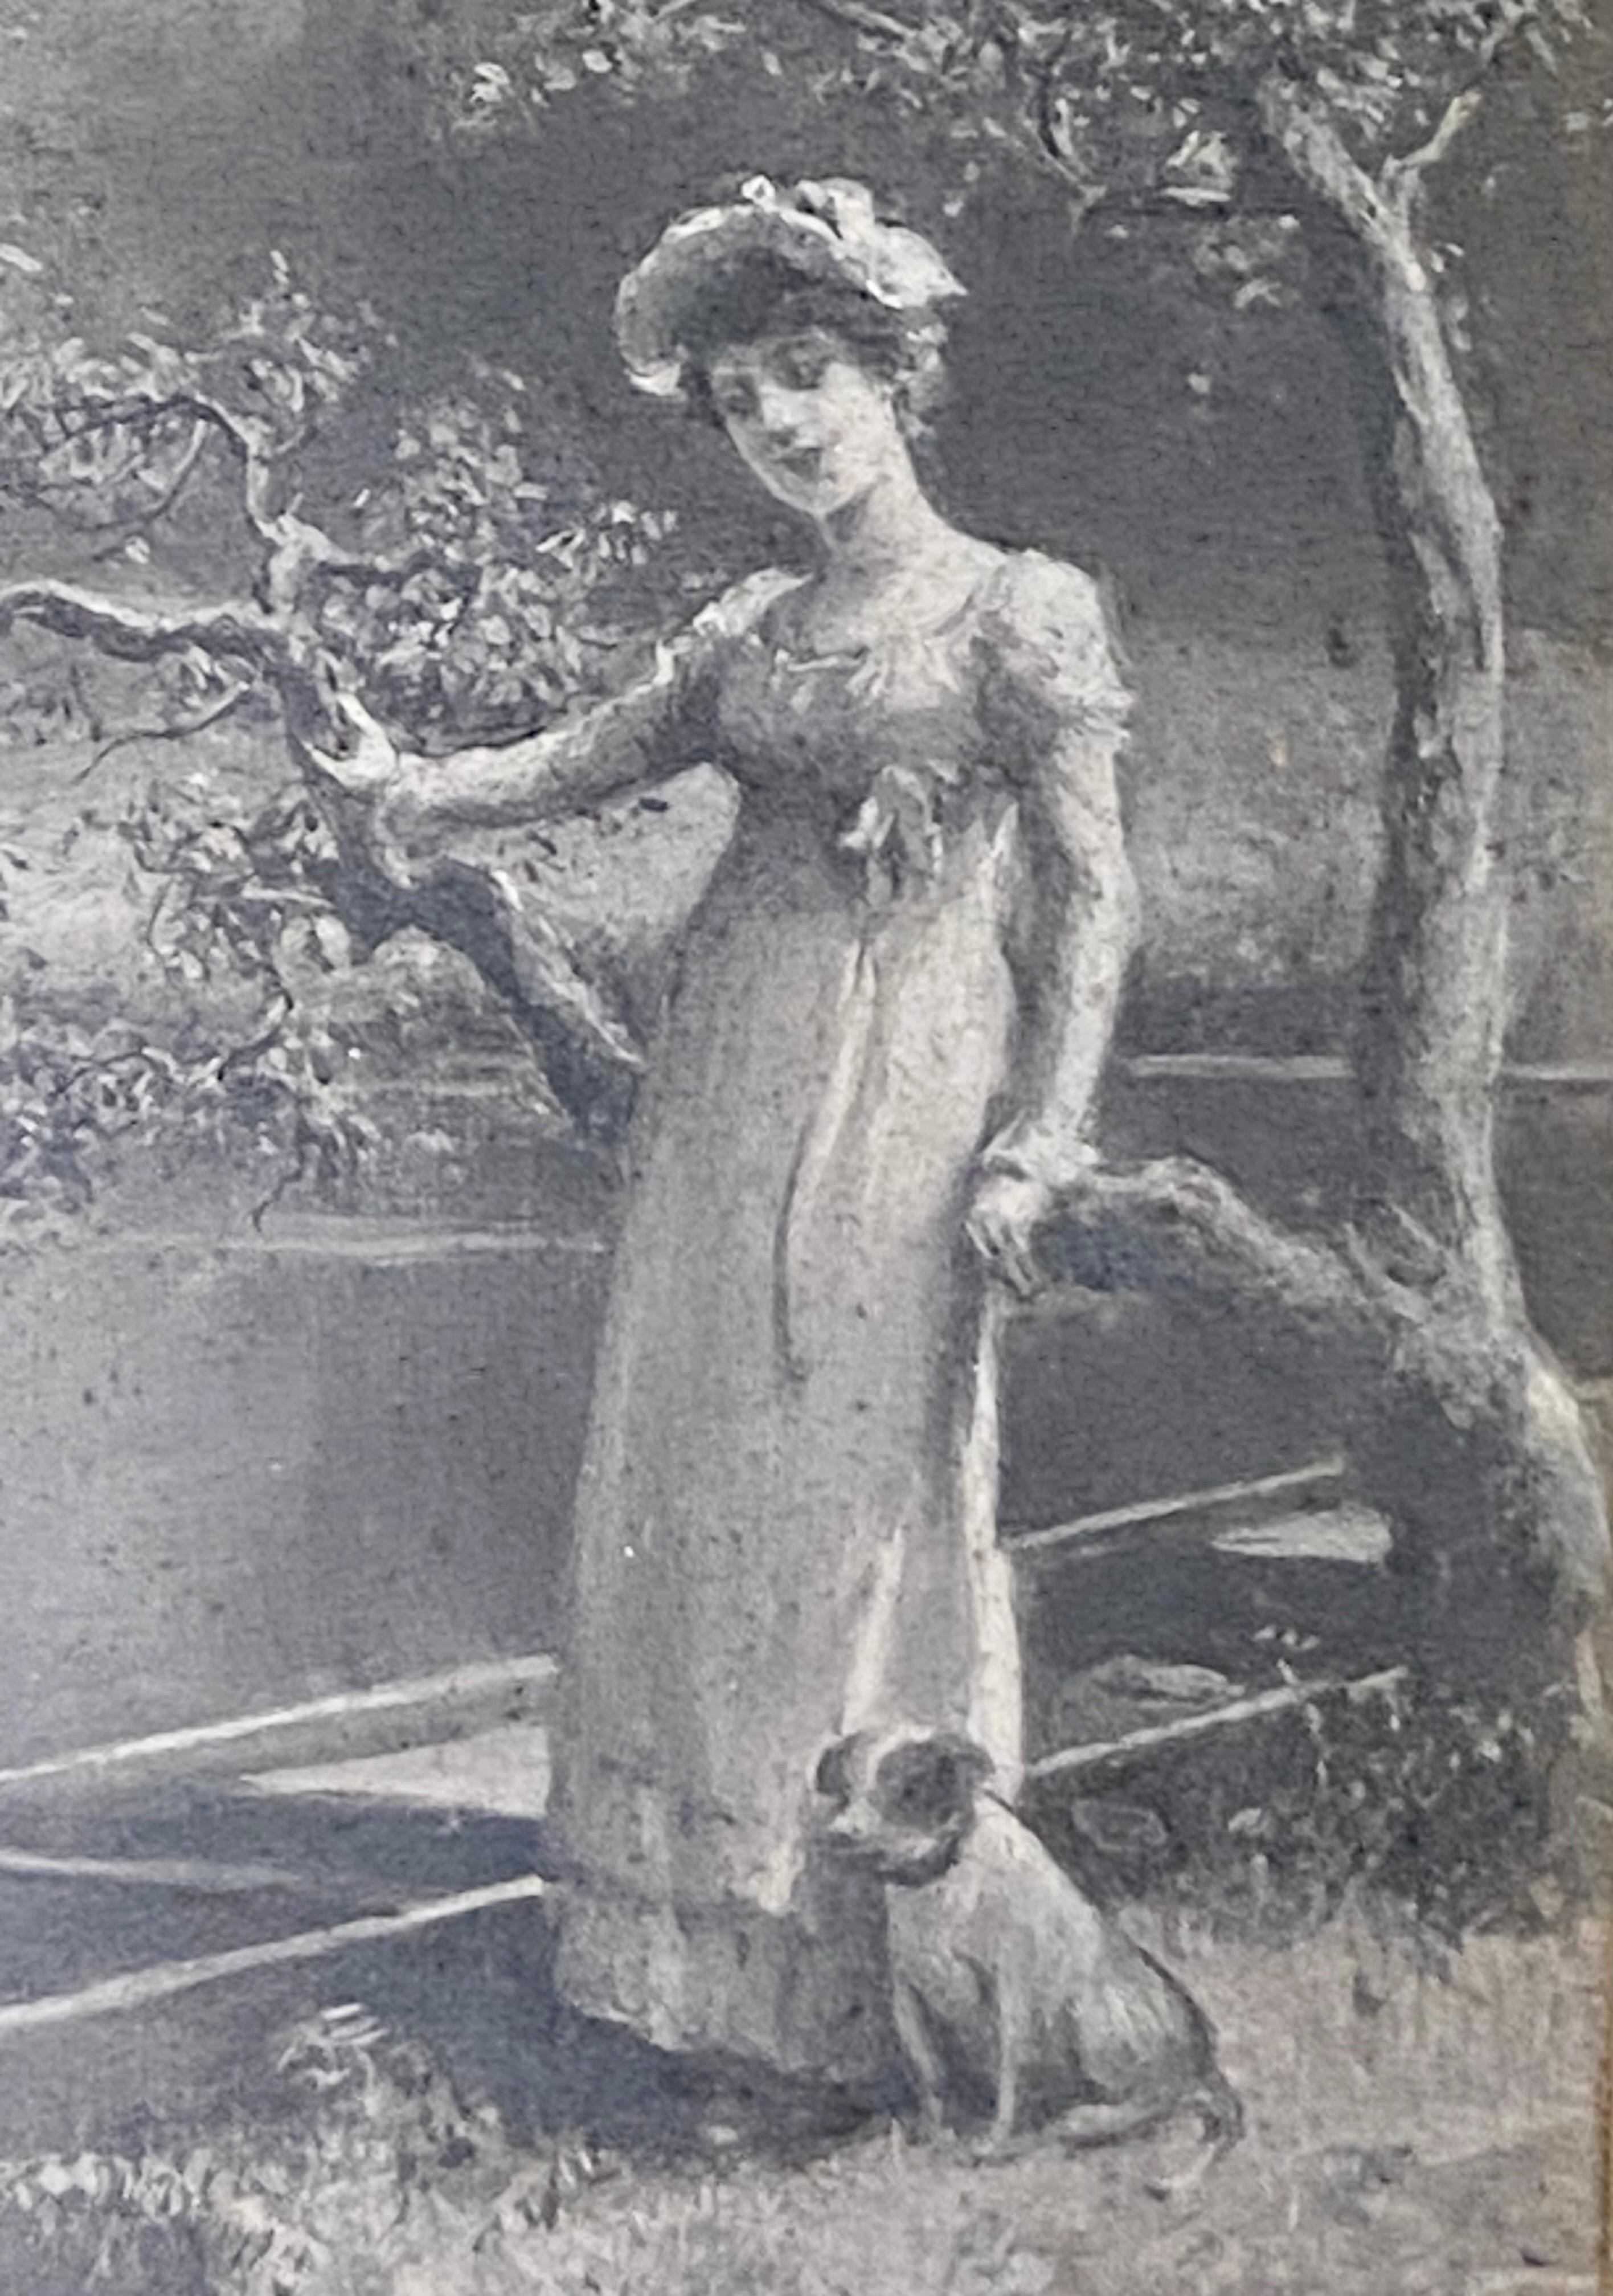 Paire d'Eva Hollyer (1865-1948) britannique. Grisaille, huile sur toile, peintures en vente 2